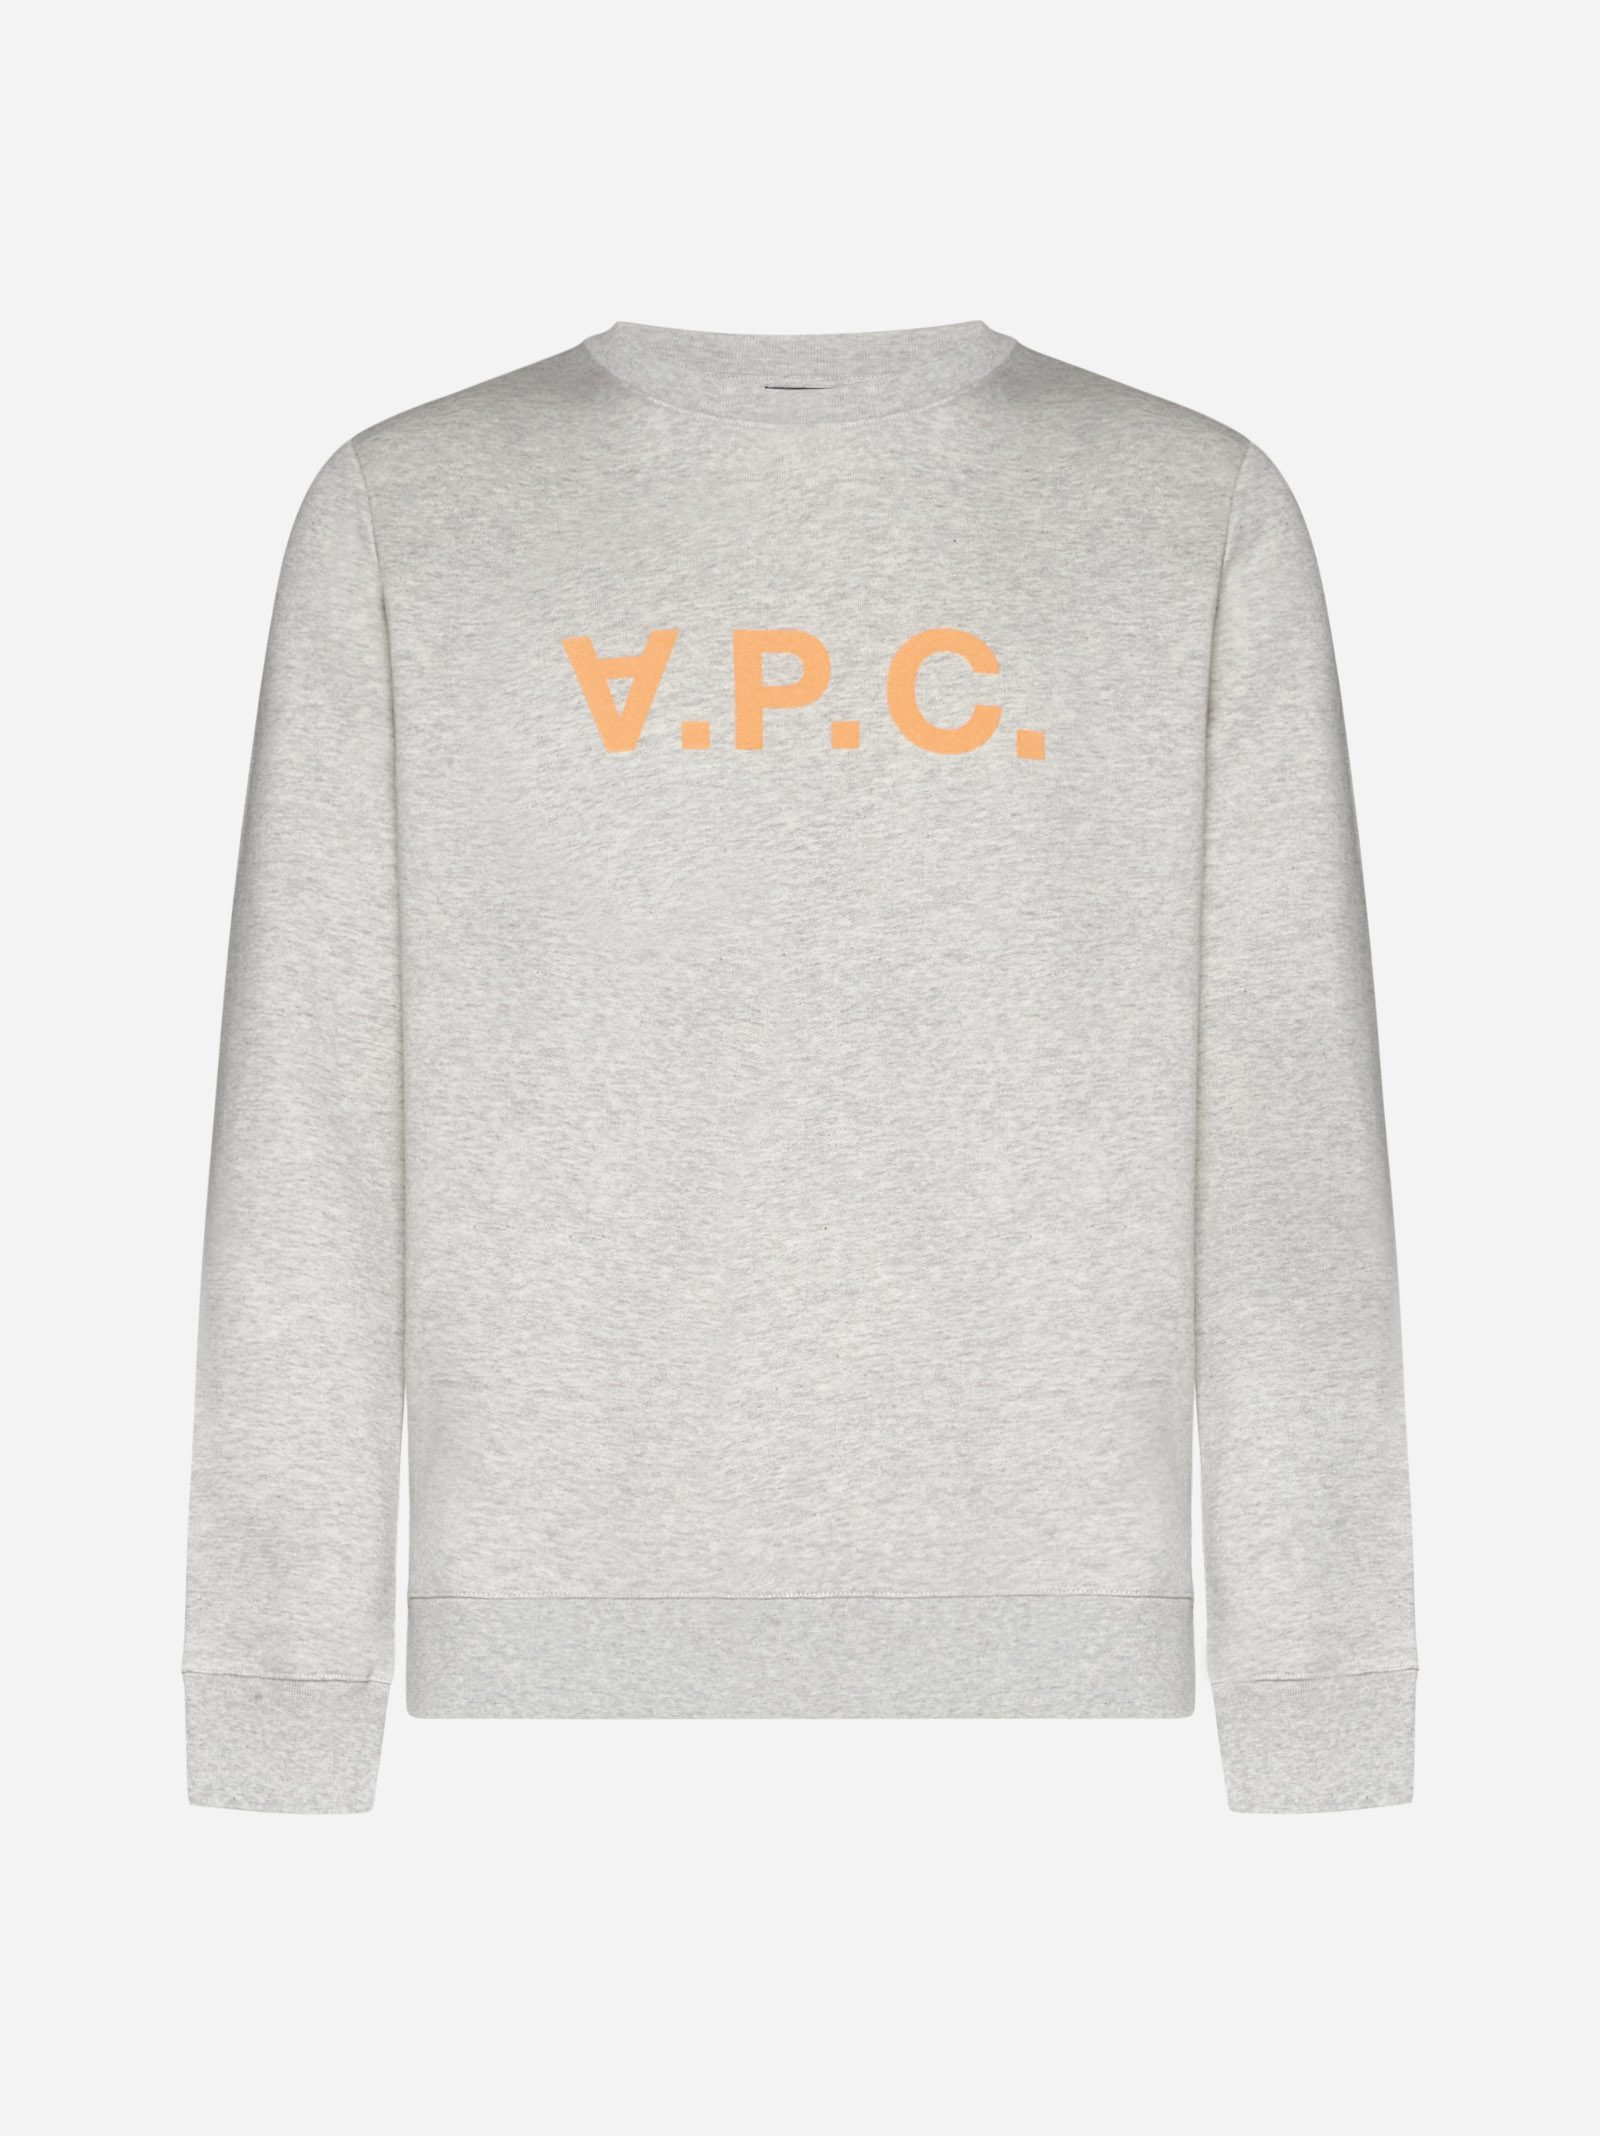 A.P.C. A.p.c. Vpc Sweatshirt Ecru/orange